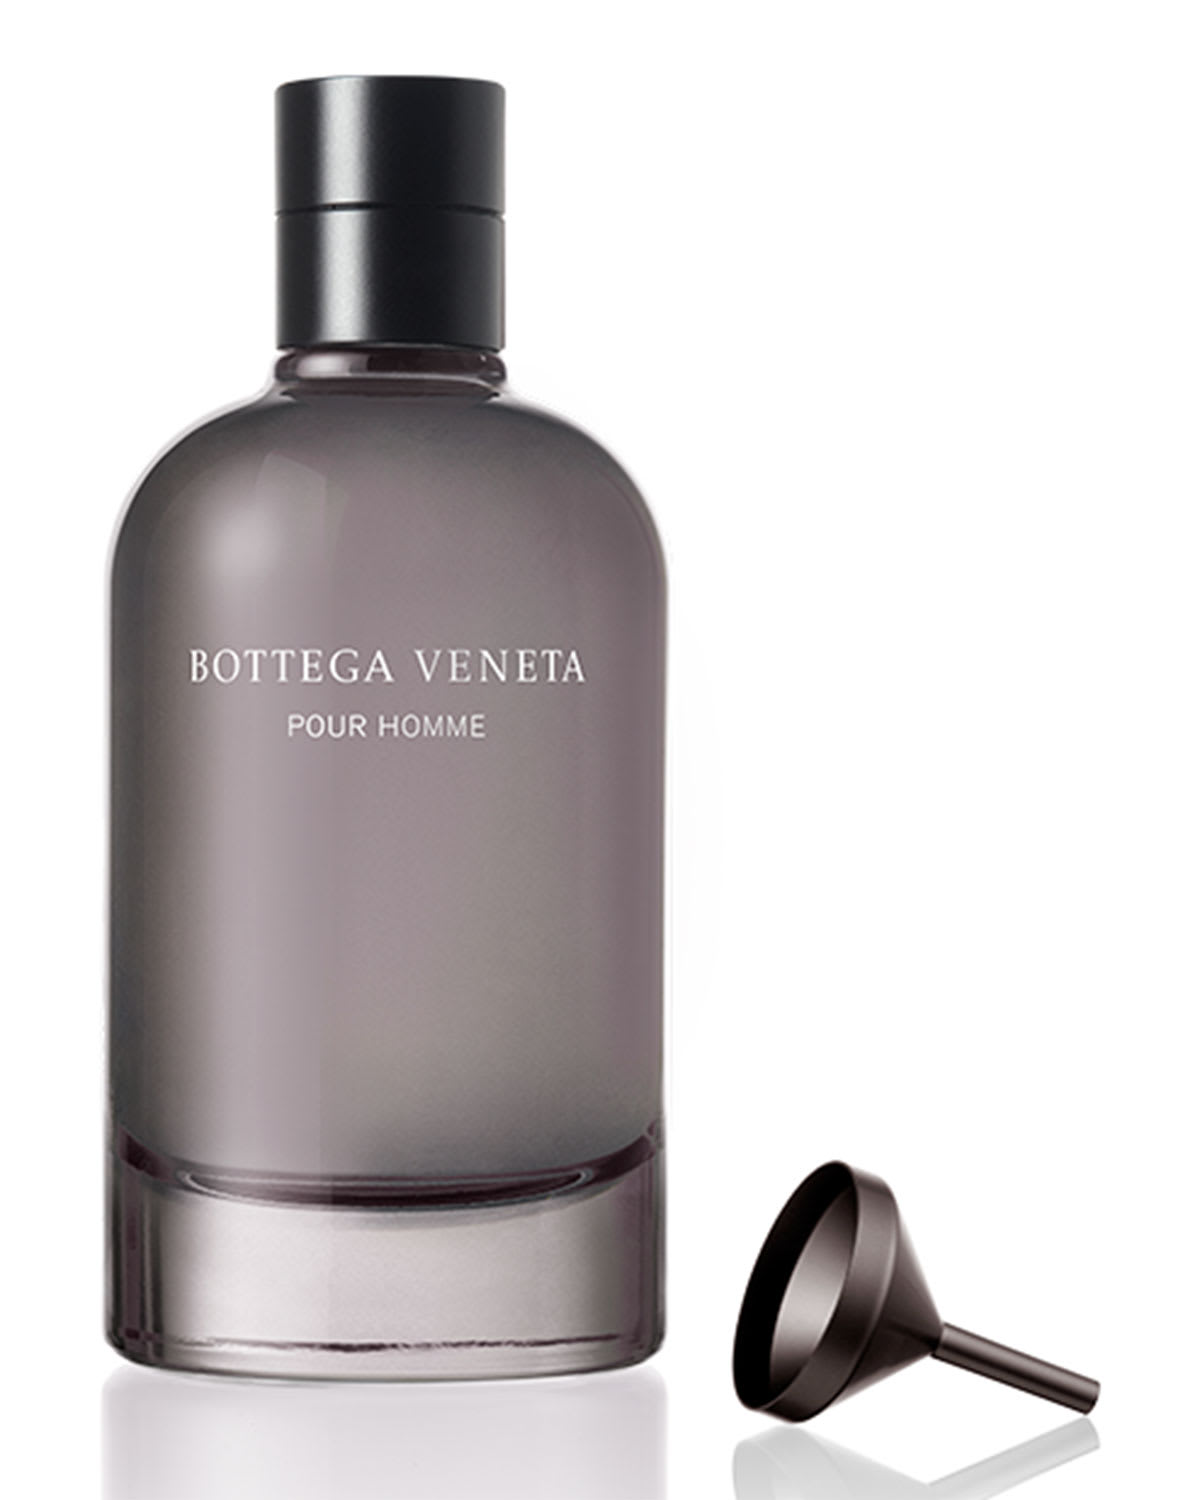 Bottega Veneta Bottega Veneta Pour Homme Eau de Parfum Refill, 3.4